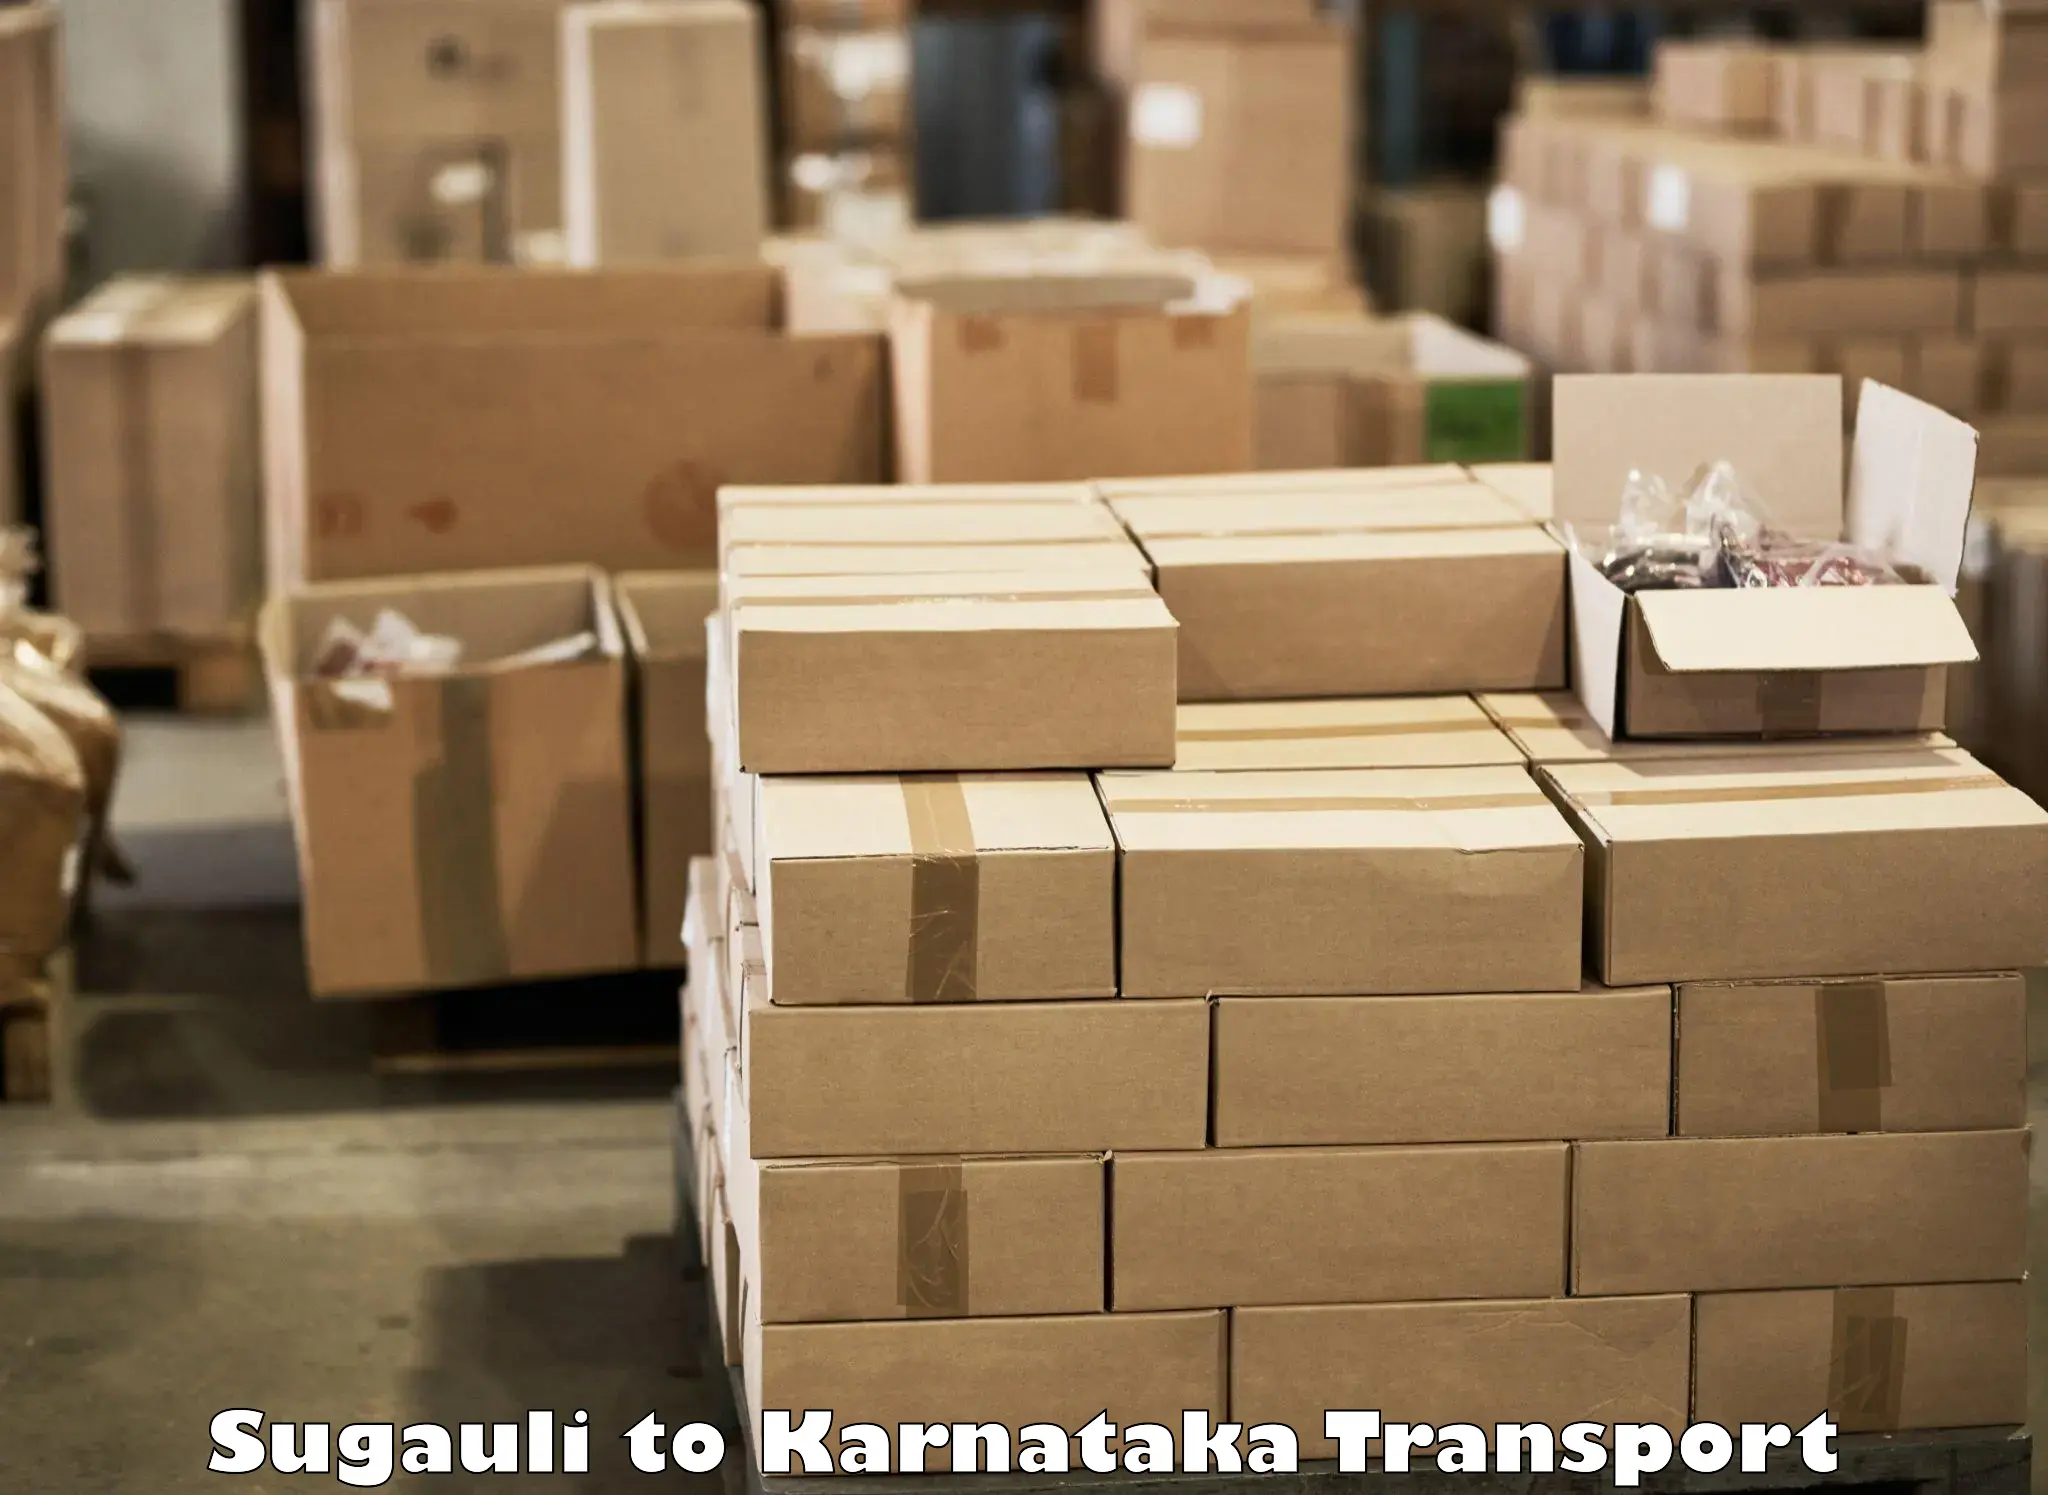 Transport in sharing Sugauli to Ranebennur